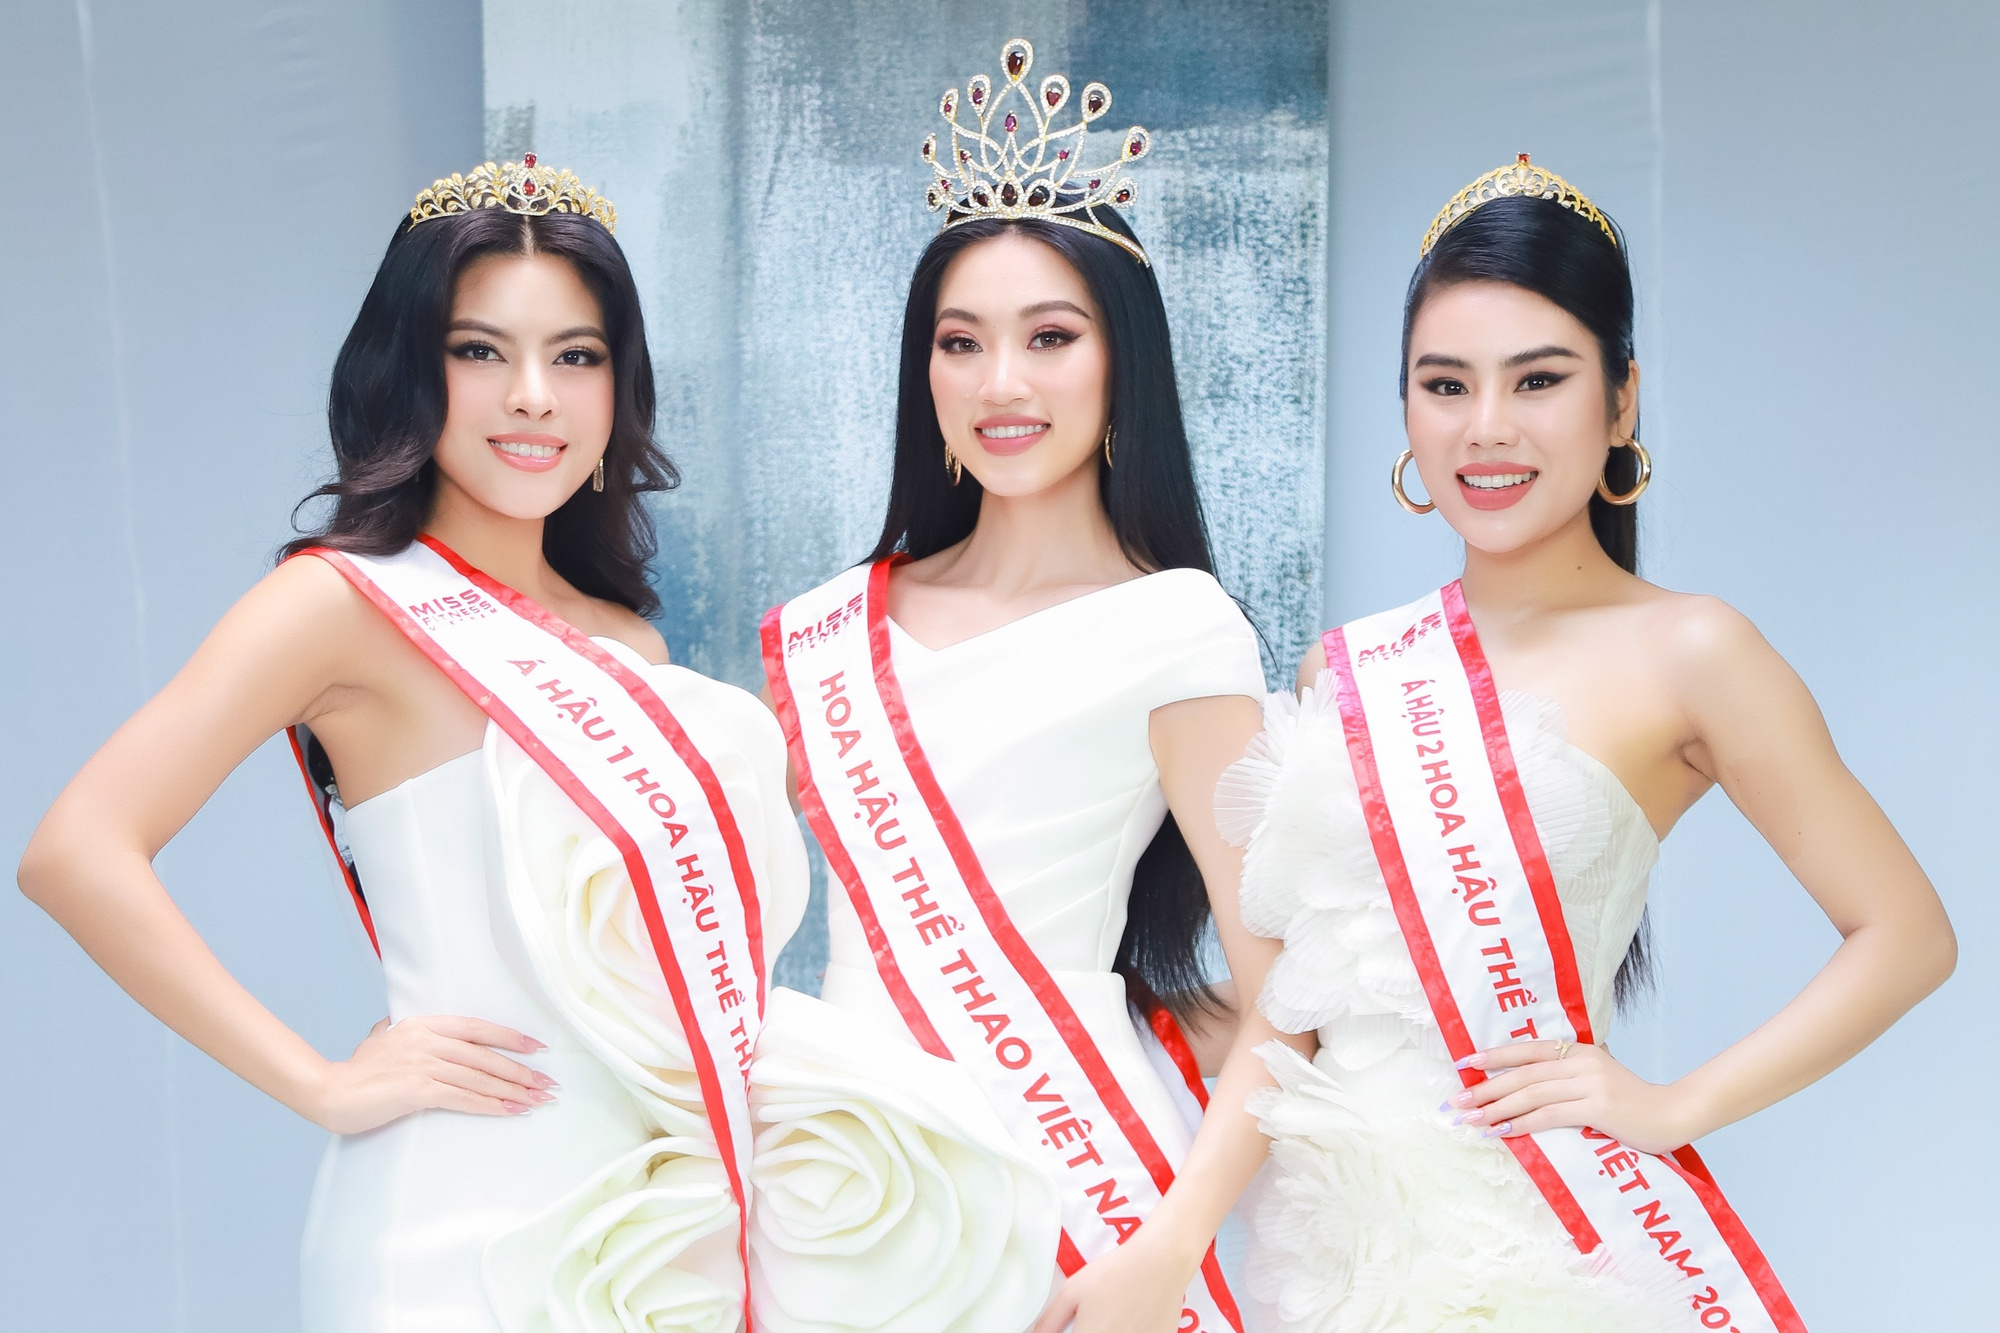 Giao lưu cùng Top 3 Hoa hậu Thể thao Việt Nam: Một lần nói rõ những lùm xùm hậu đăng quang, nhận xét thẳng thắn về Lê Bống  - Ảnh 1.